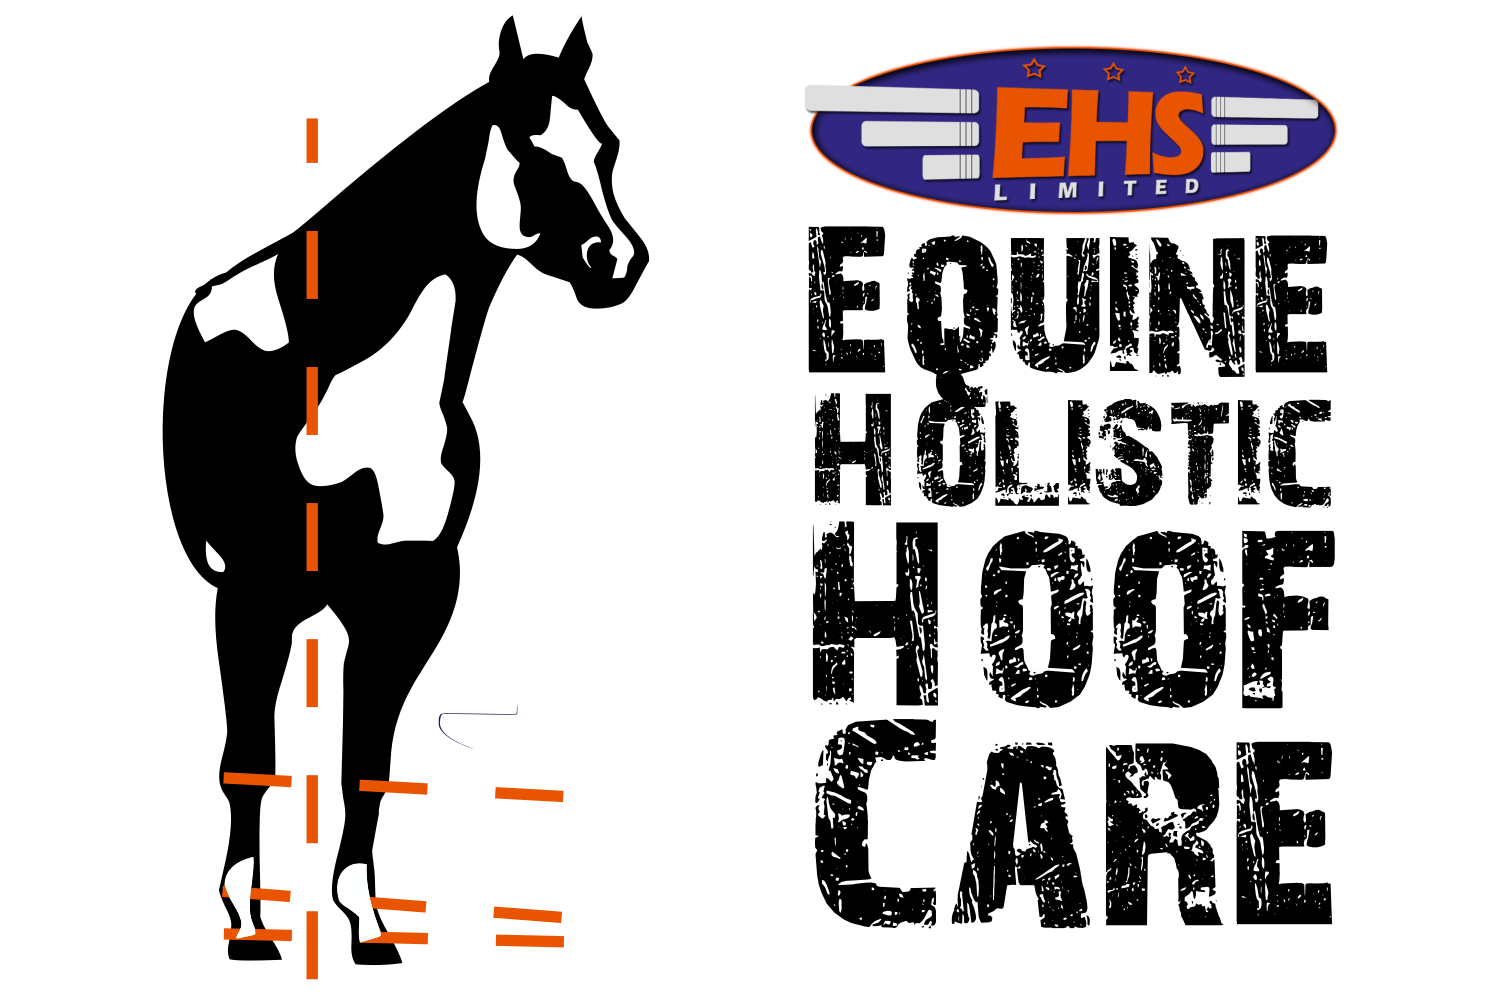 European Horse Service Ltd